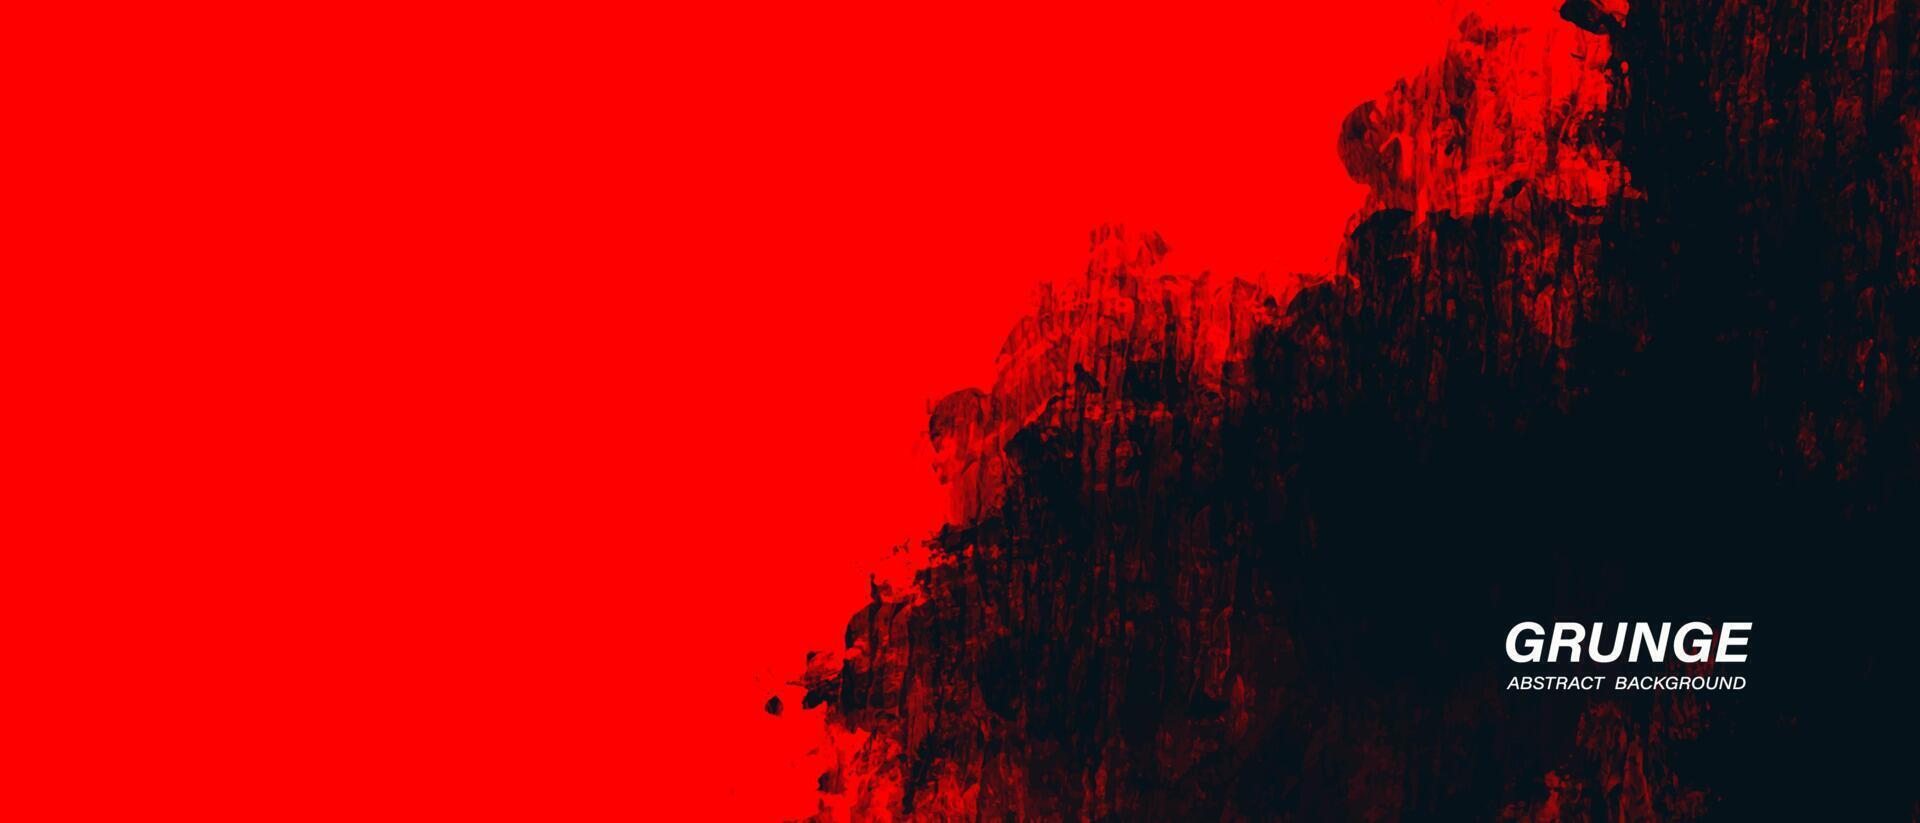 fond grunge abstrait noir et rouge vecteur